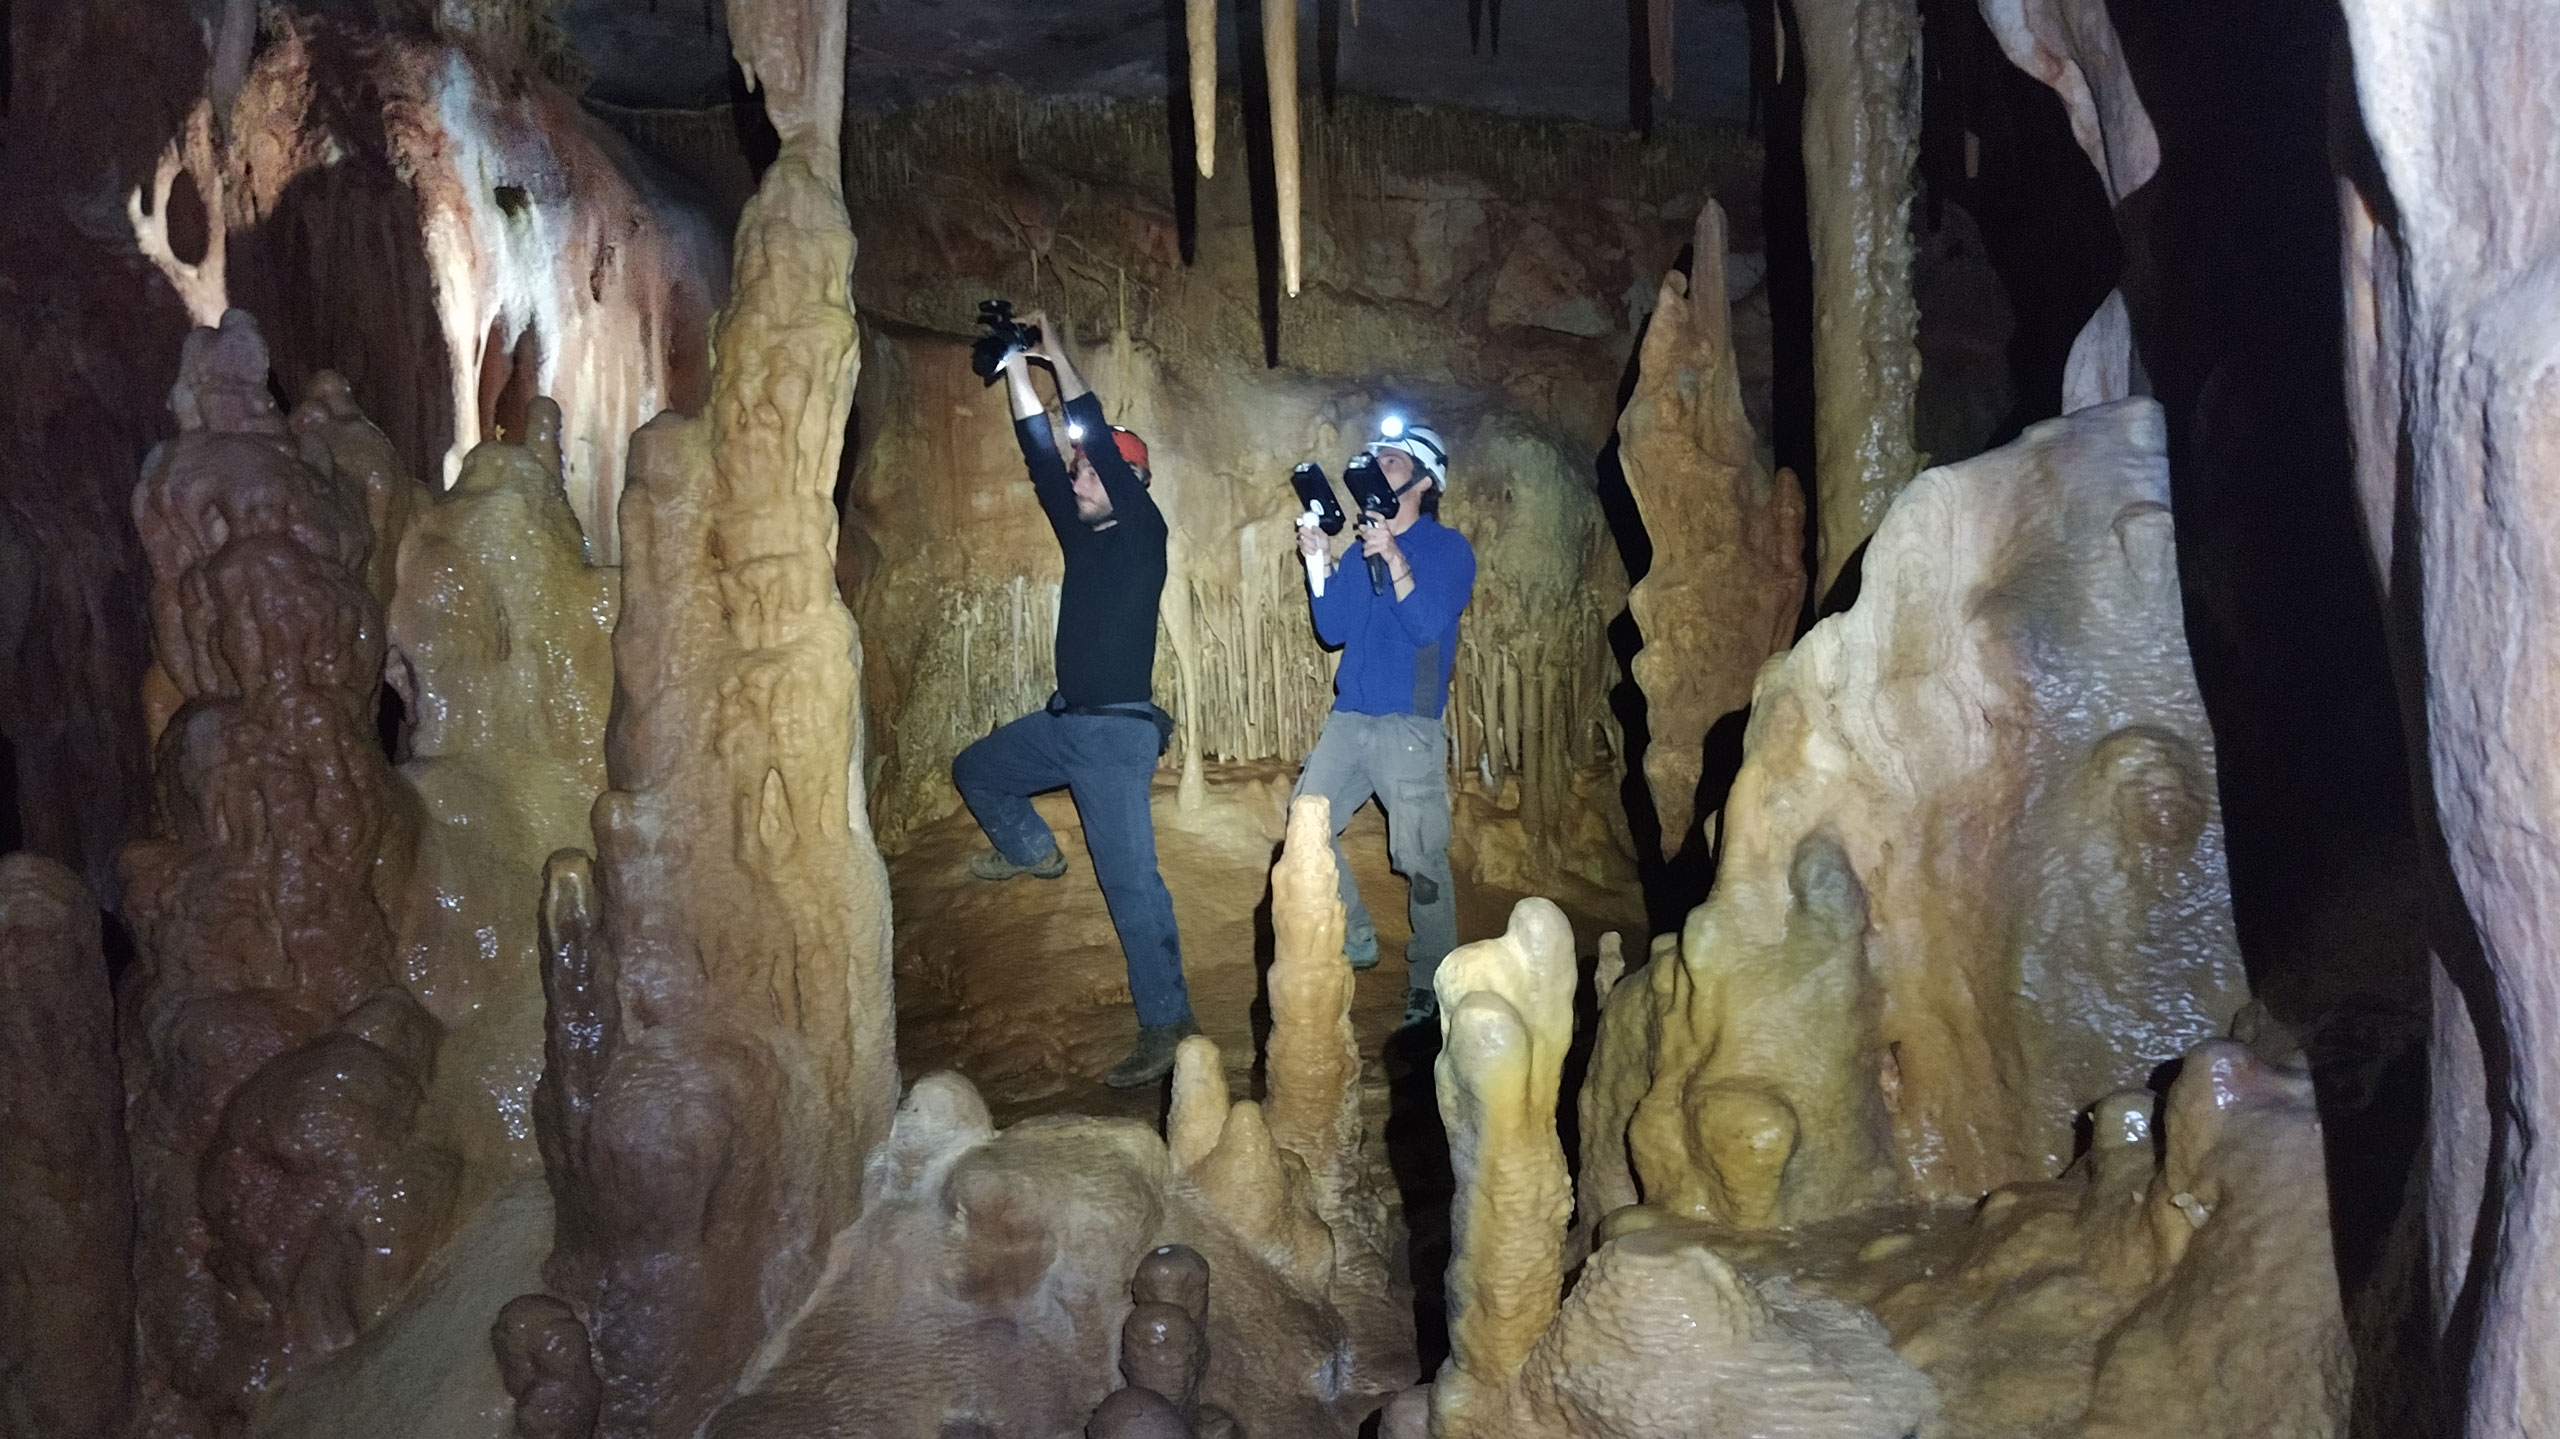 [5] Το συνεργείο κατά τη διάρκεια της φωτογράφισης του εσωτερικού του σπηλαίου. Σε πολλές περιπτώσεις, εκτός από studio flash, χρησιμοποιήθηκε και η τεχνική bounce flash σε πολύ στενά σημεία του σπηλαίου